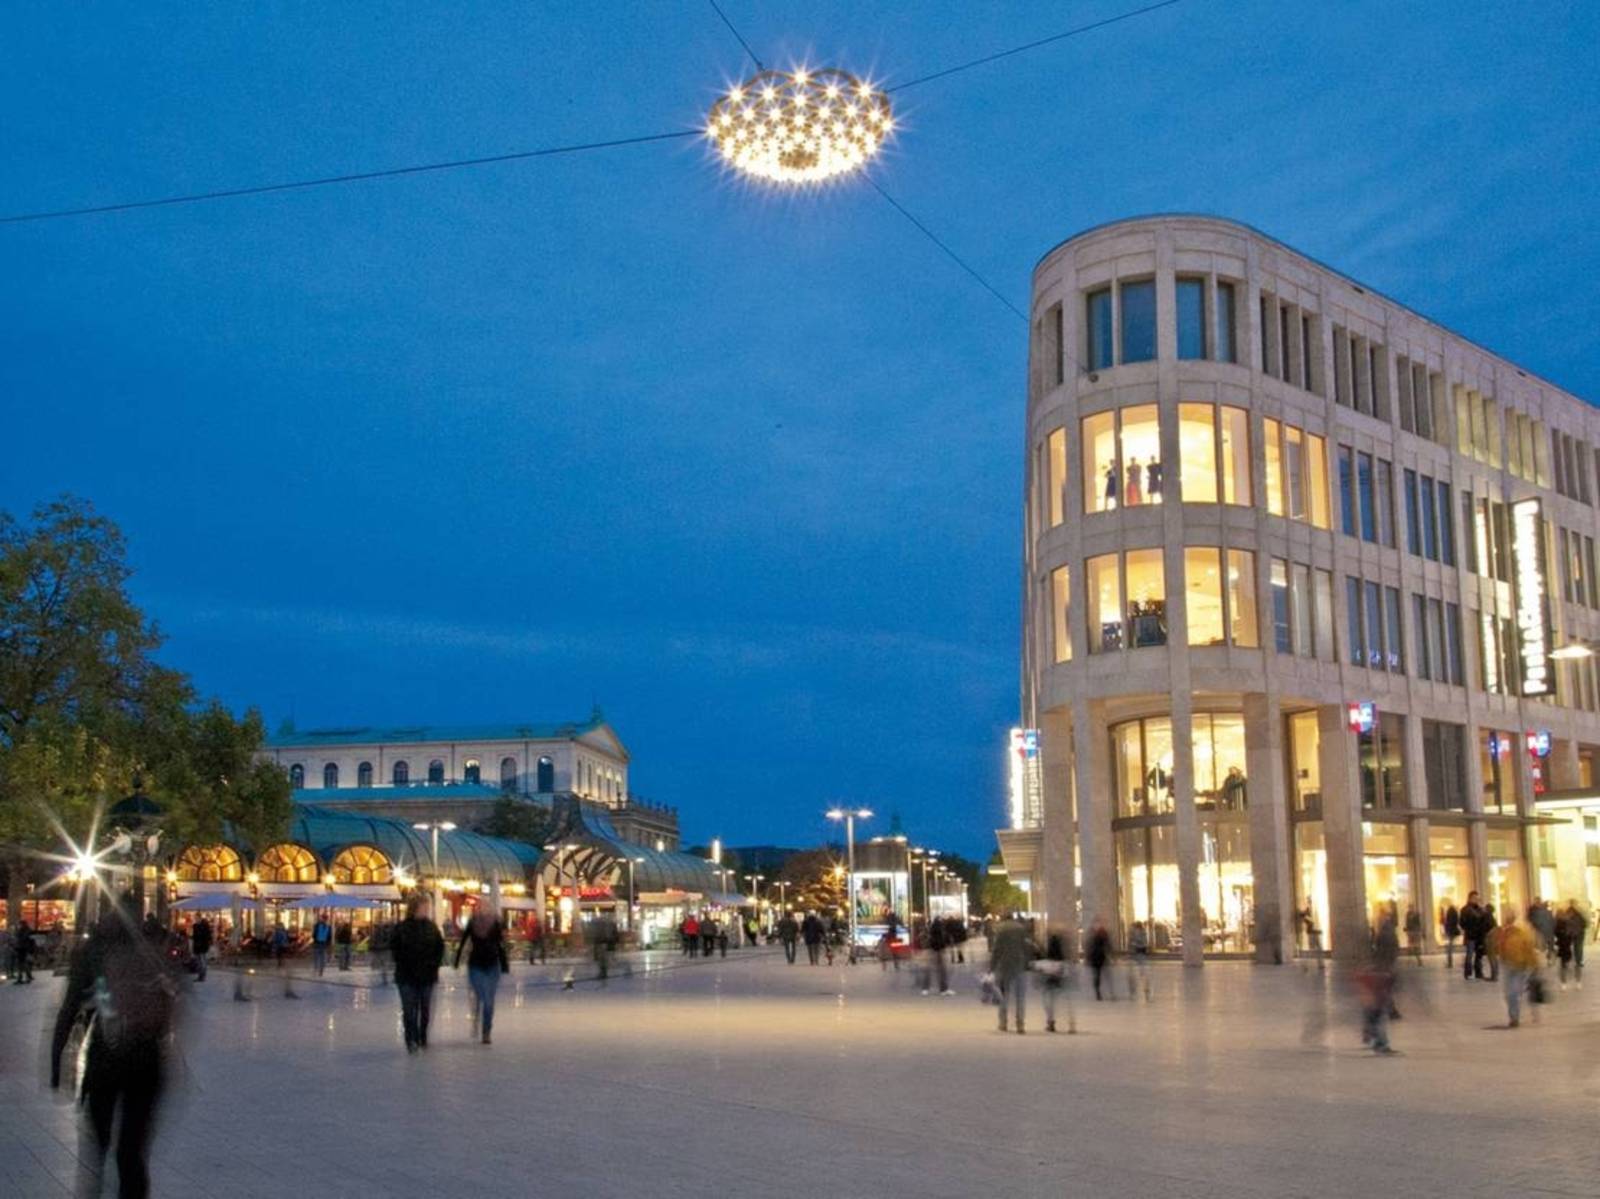 Blick auf den abendlich illuminierten Kröpcke in Hannovers Innenstadt.